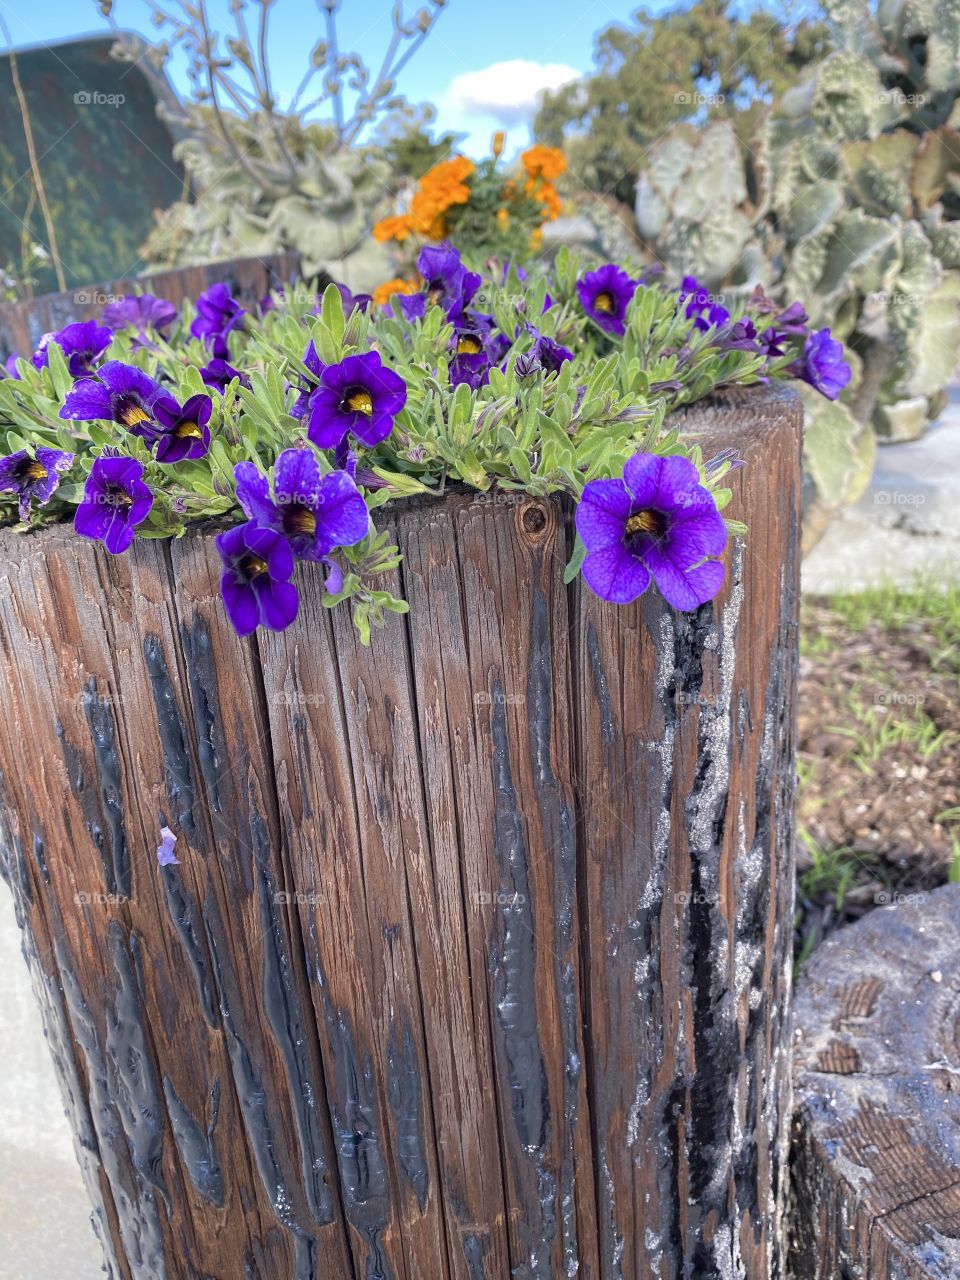 Flowers in wood post